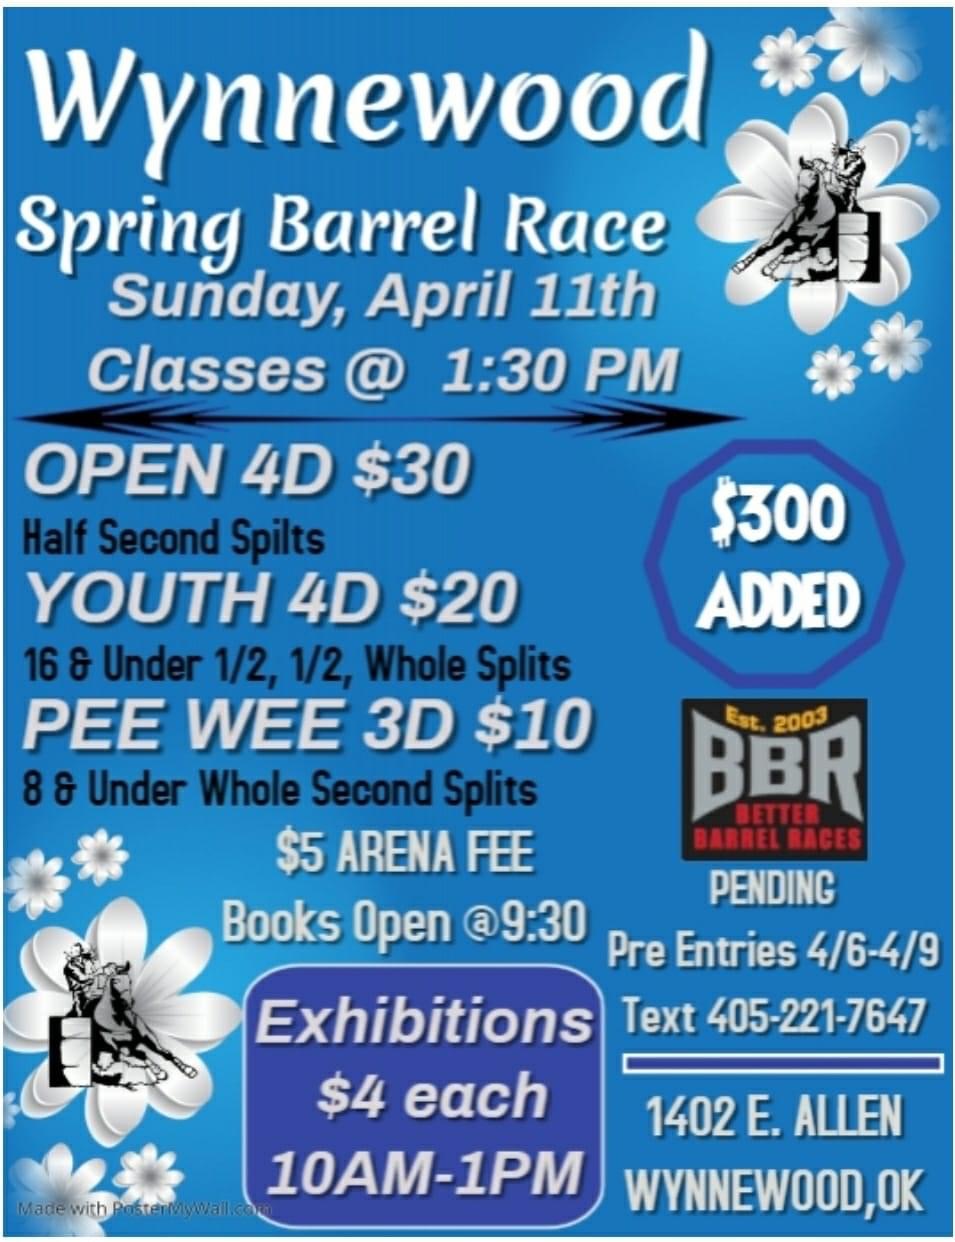 Wynnewood Spring Barrel Race